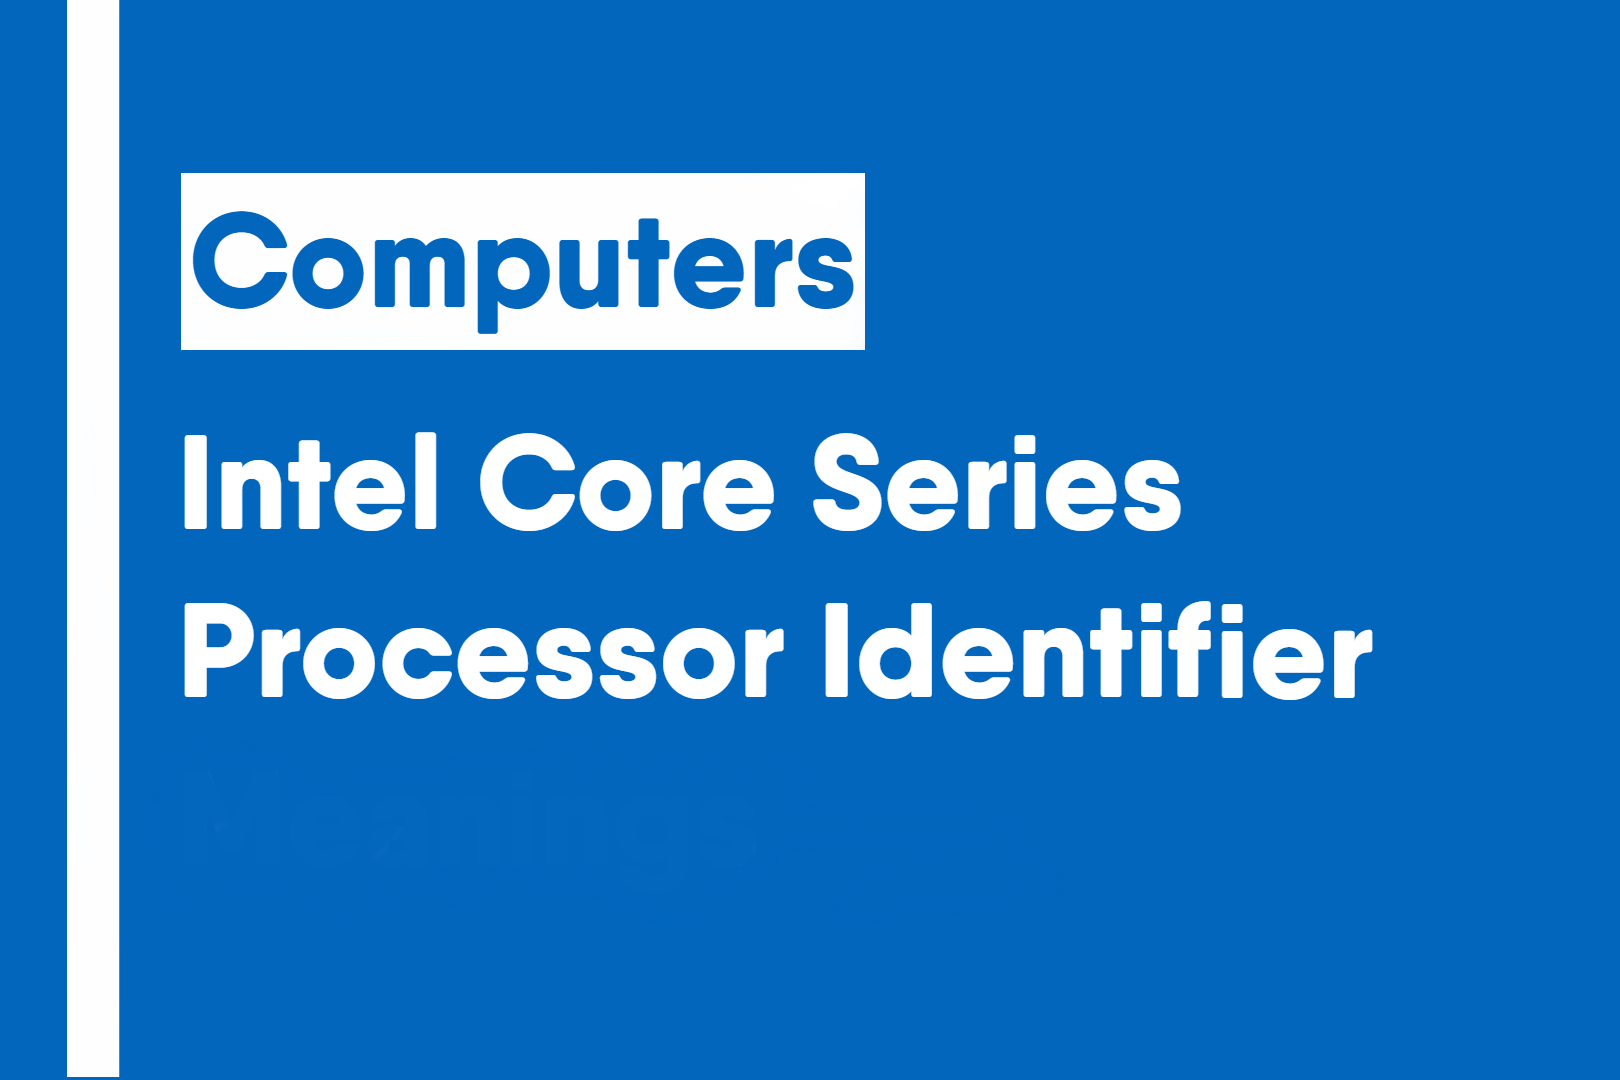 Intel Core Series Processor Identifier